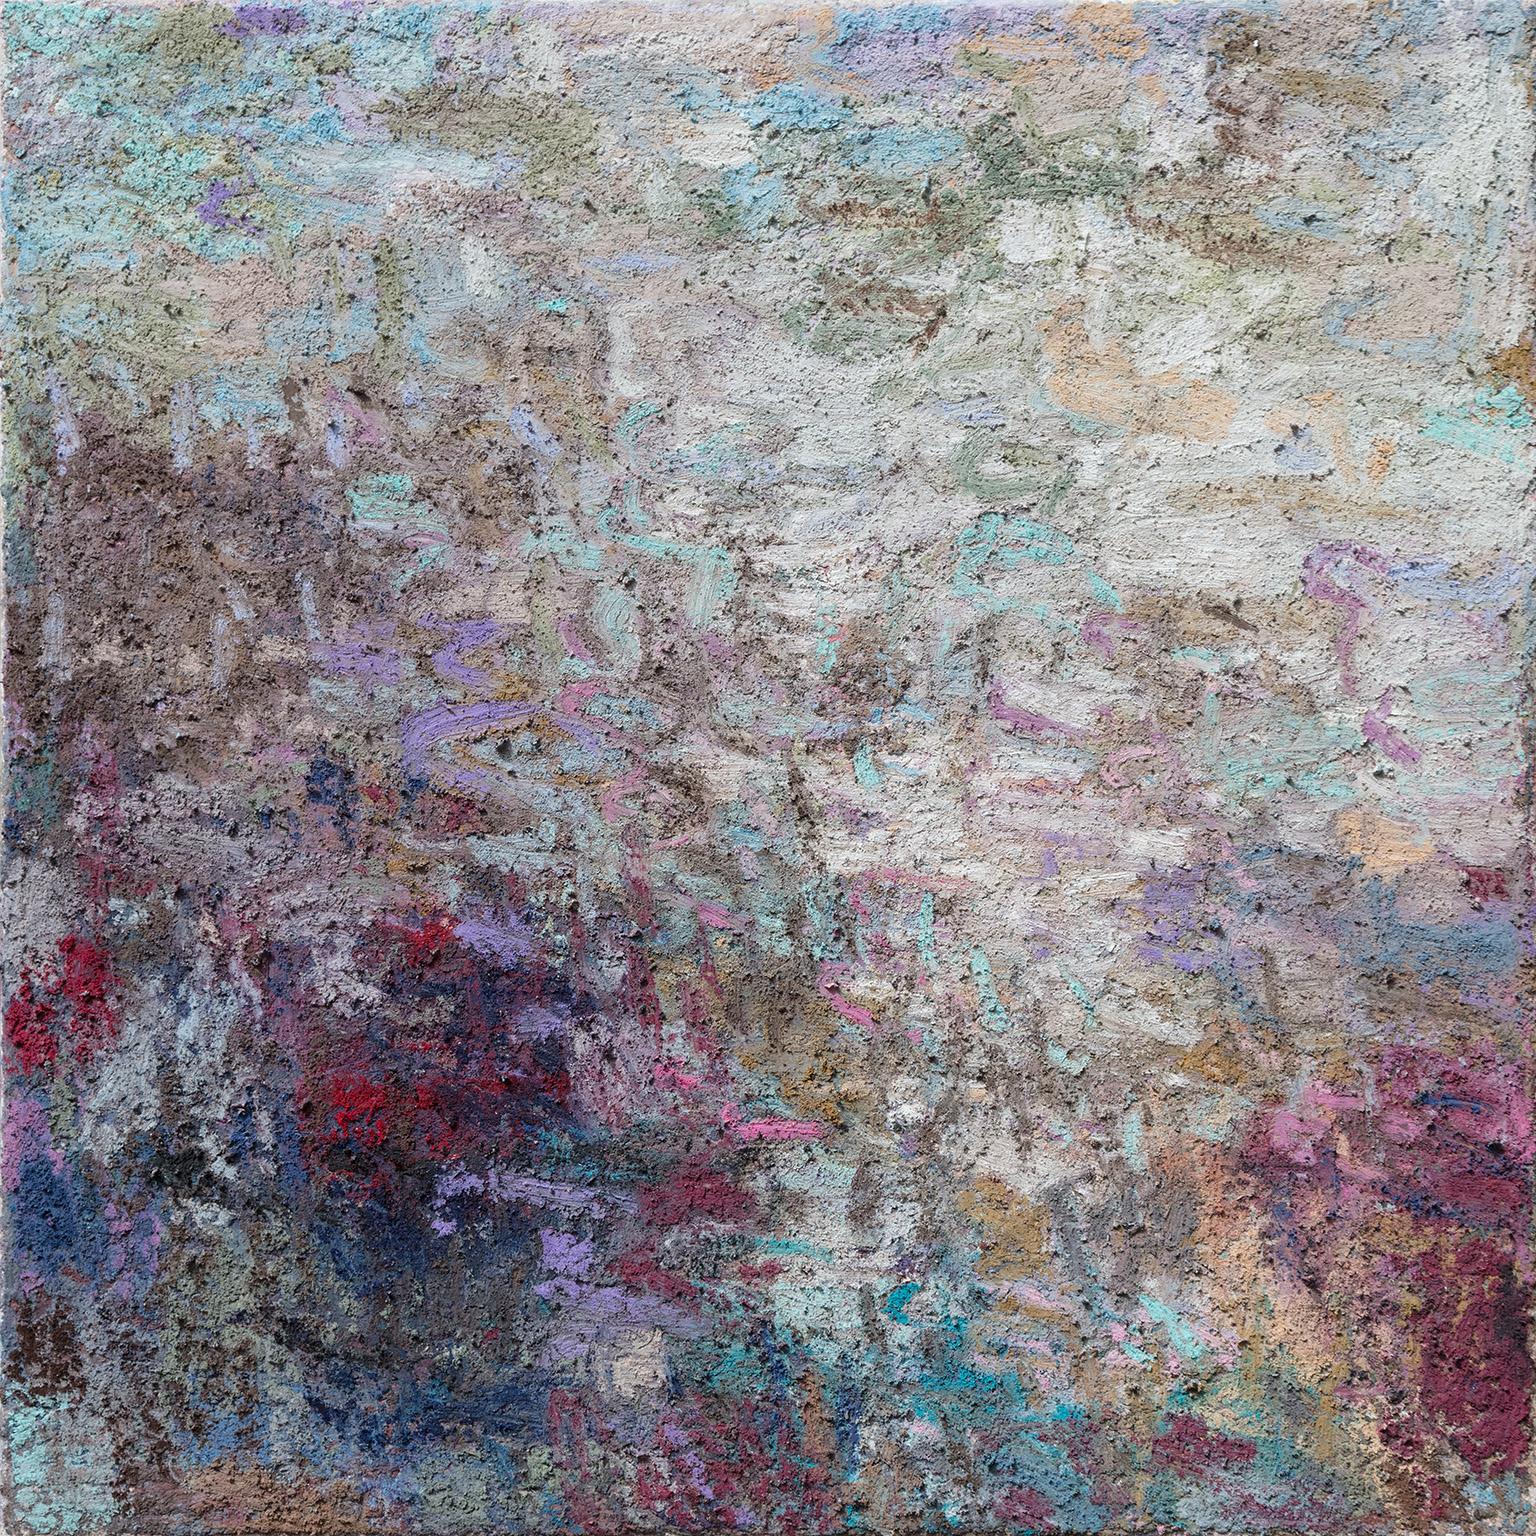 Ohne Titel IV – Abstraktes Gemälde mit dickem Impasto in Blau und Rot